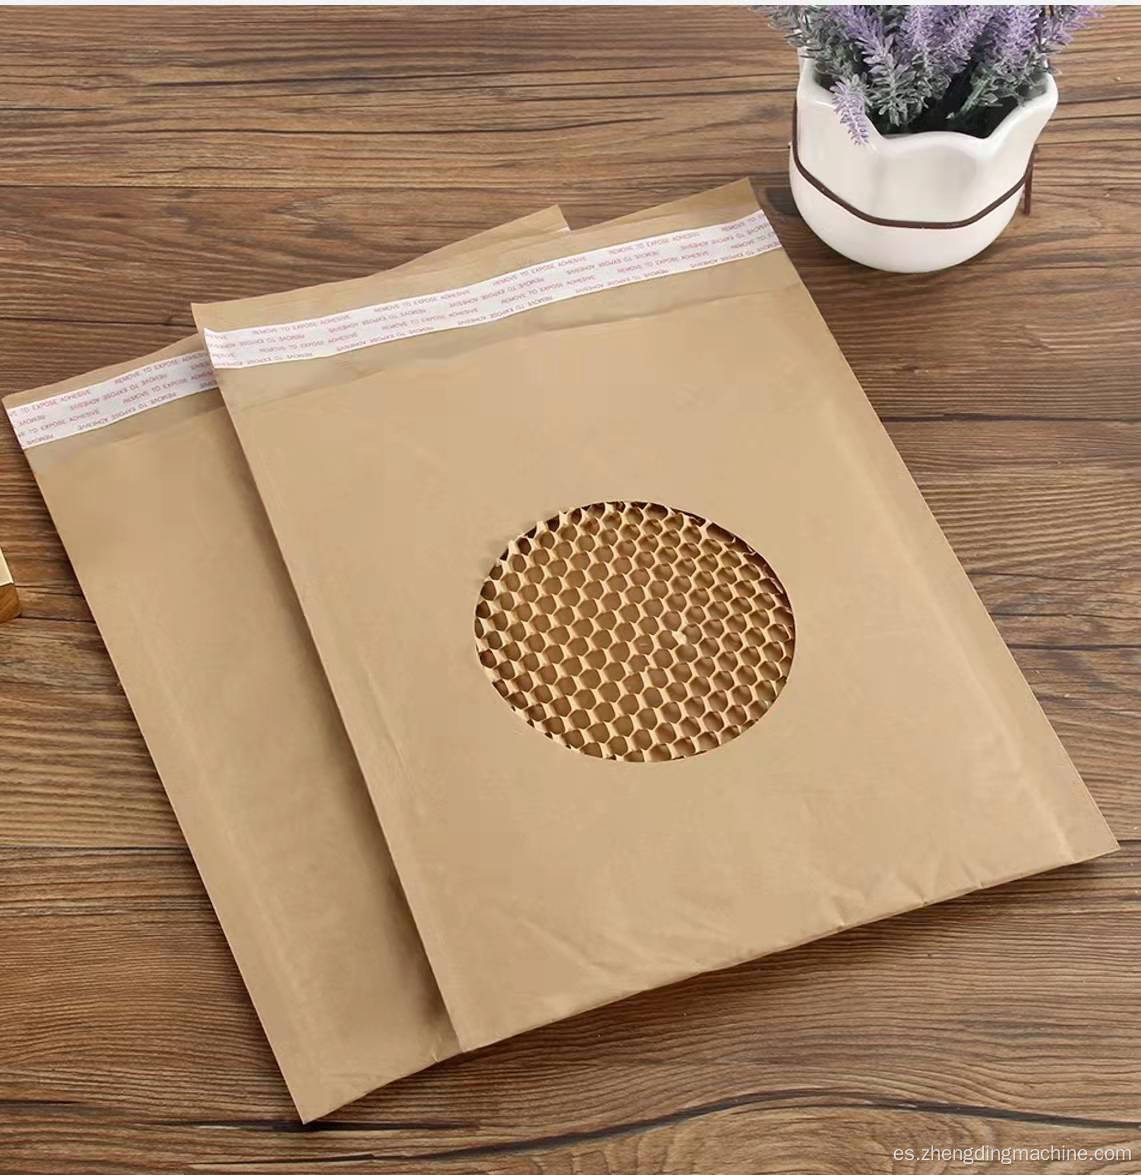 Máquina de bolsas express core de papel honeycomb